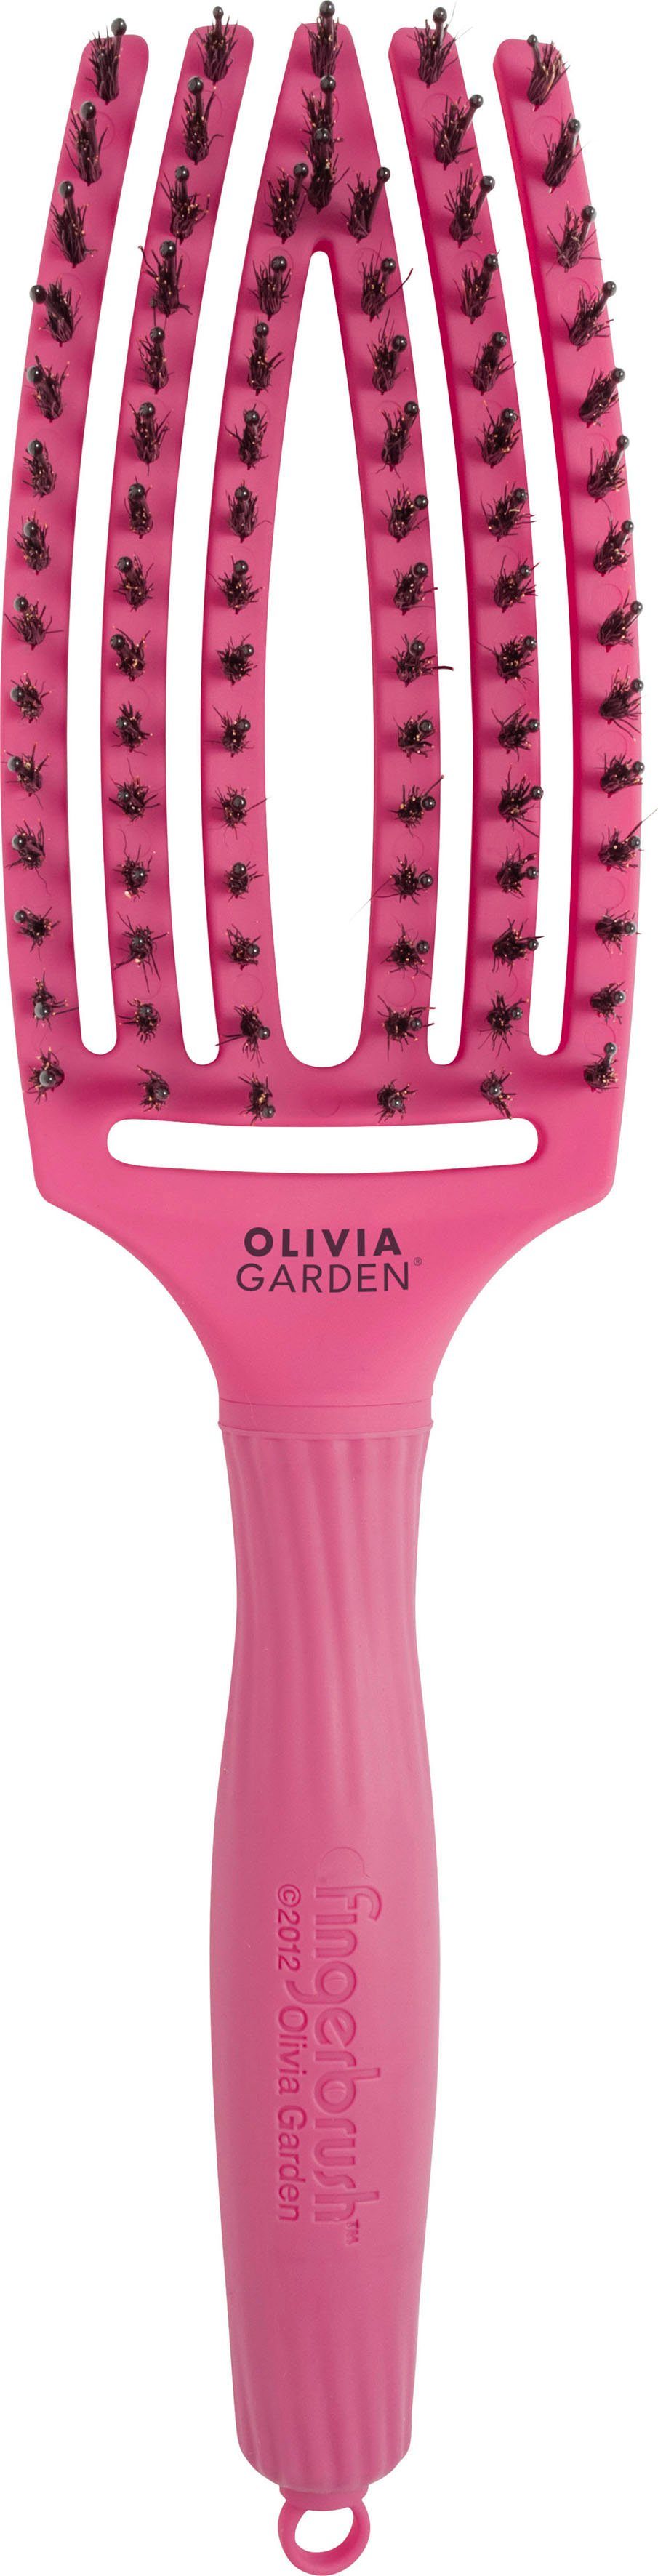 Ideal Medium, Glätten, Kopfhautmassage Fingerbrush GARDEN zur Combo und zum Haarbürste Entwirren OLIVIA